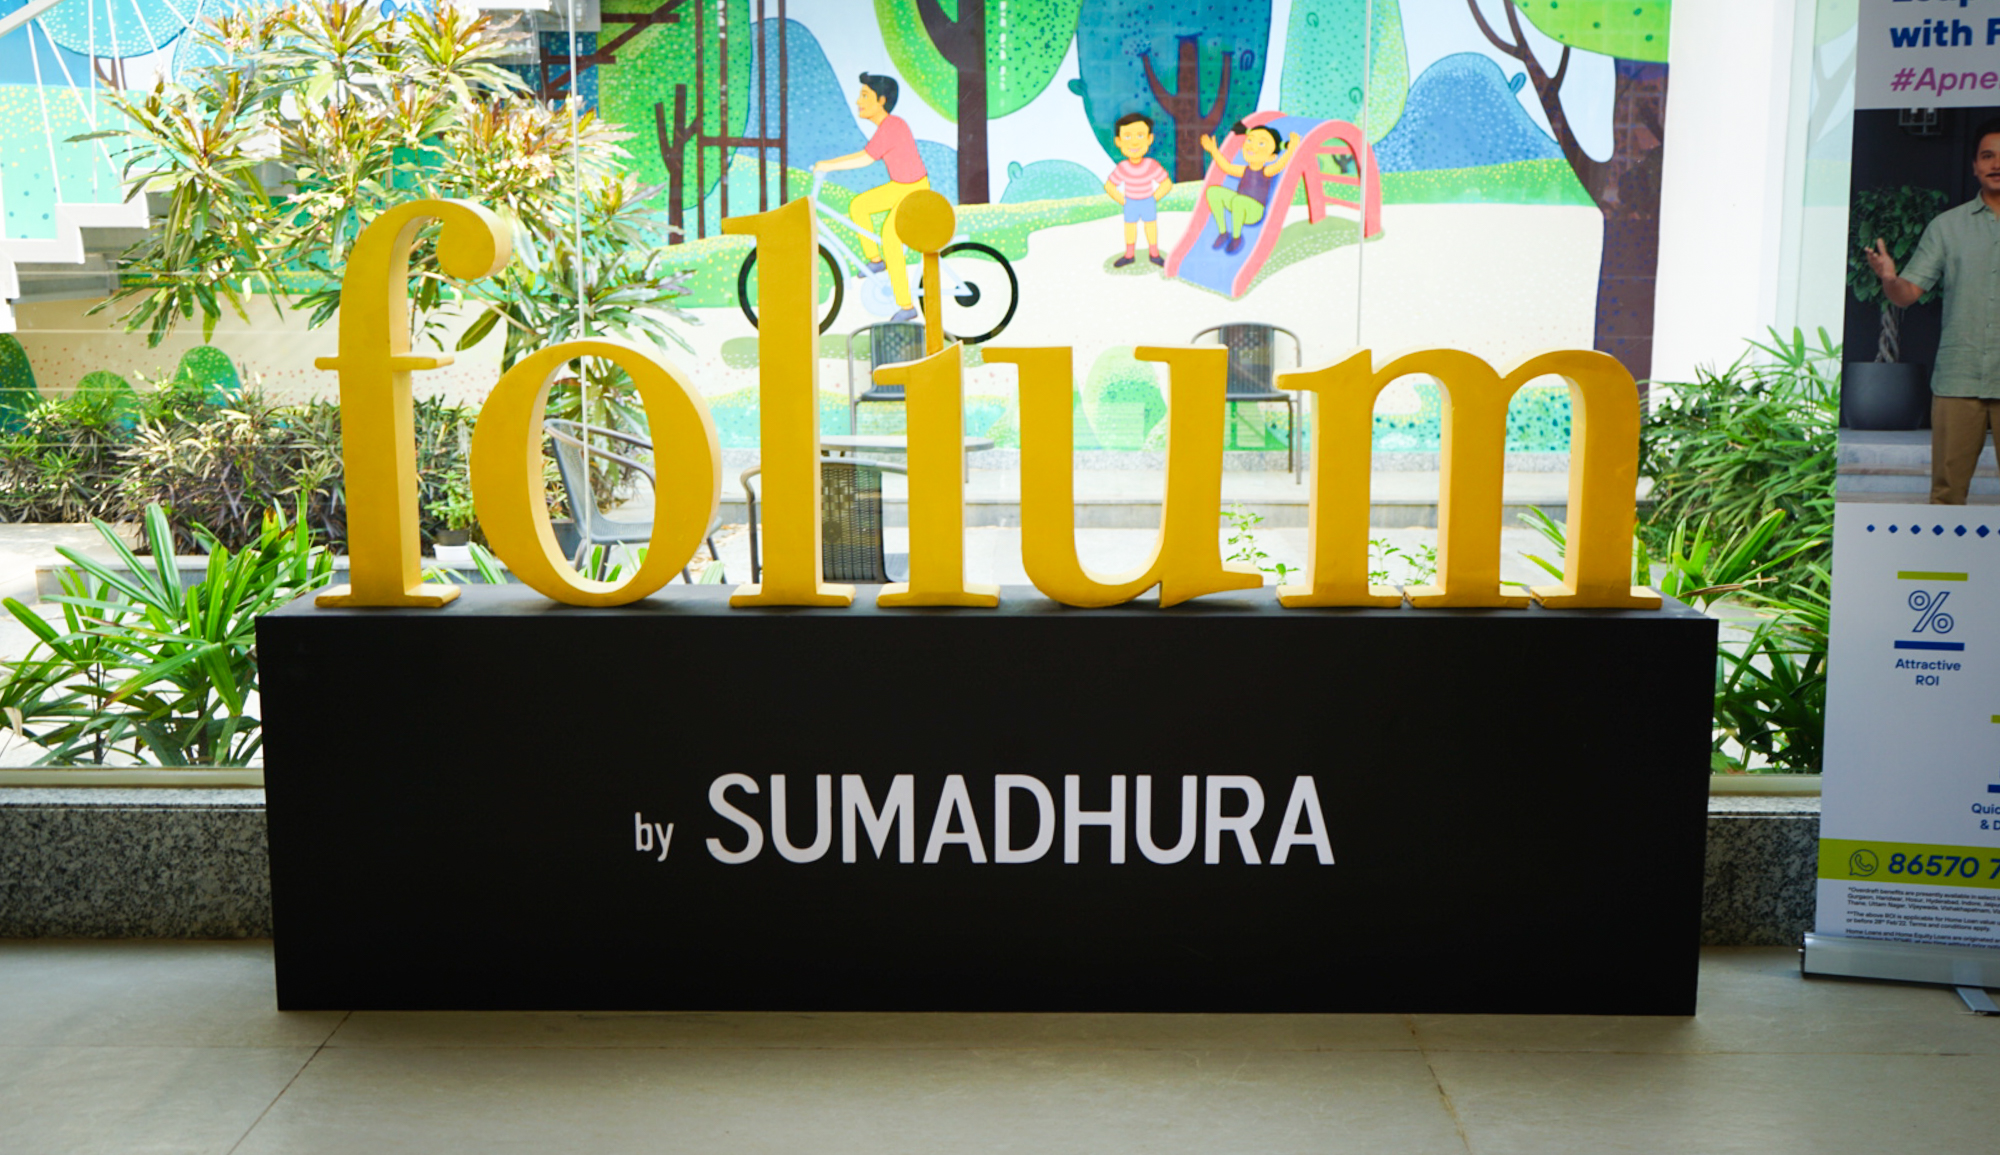 Sumadhura Folium Experience Centre 12 1